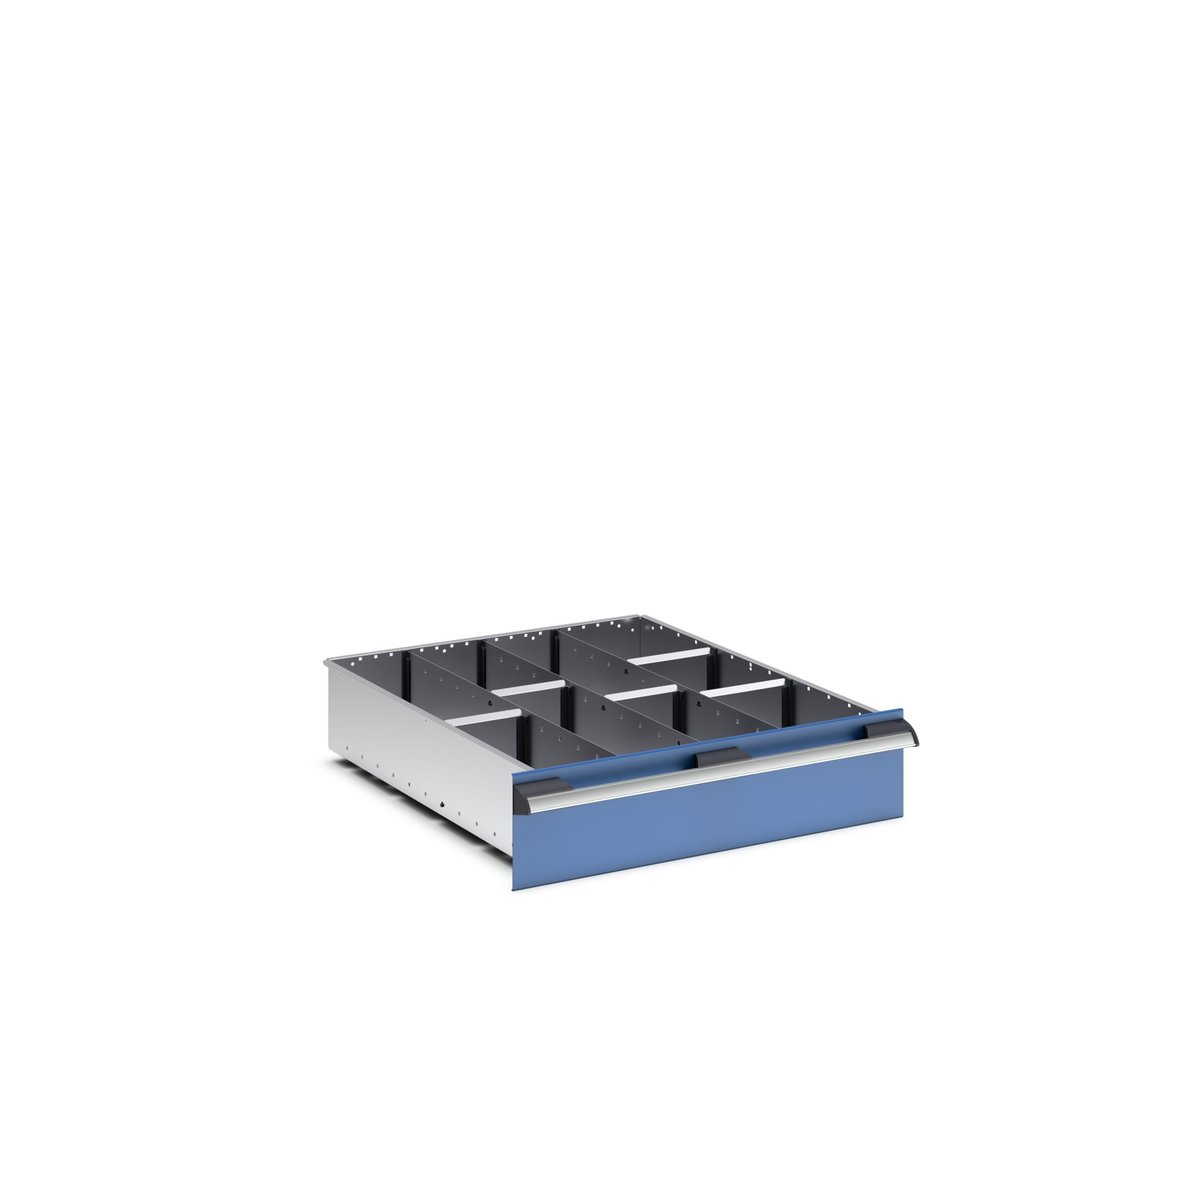 43020651.51 - cubio adjustable divider kit